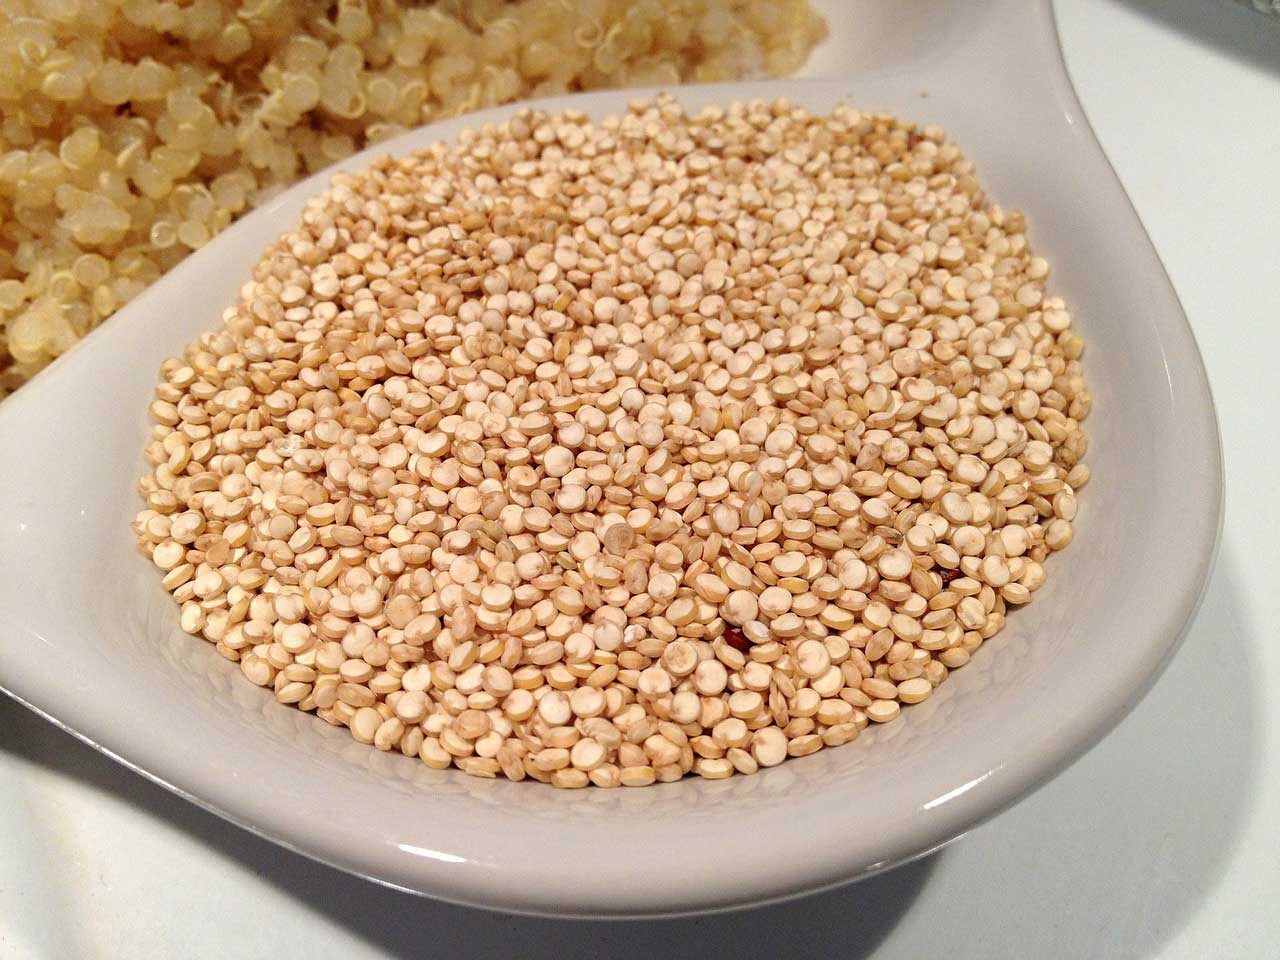 A quinoa fogyás egészségügyi előnyei. Milyen előnyökkel jár a quinoa általánosságban